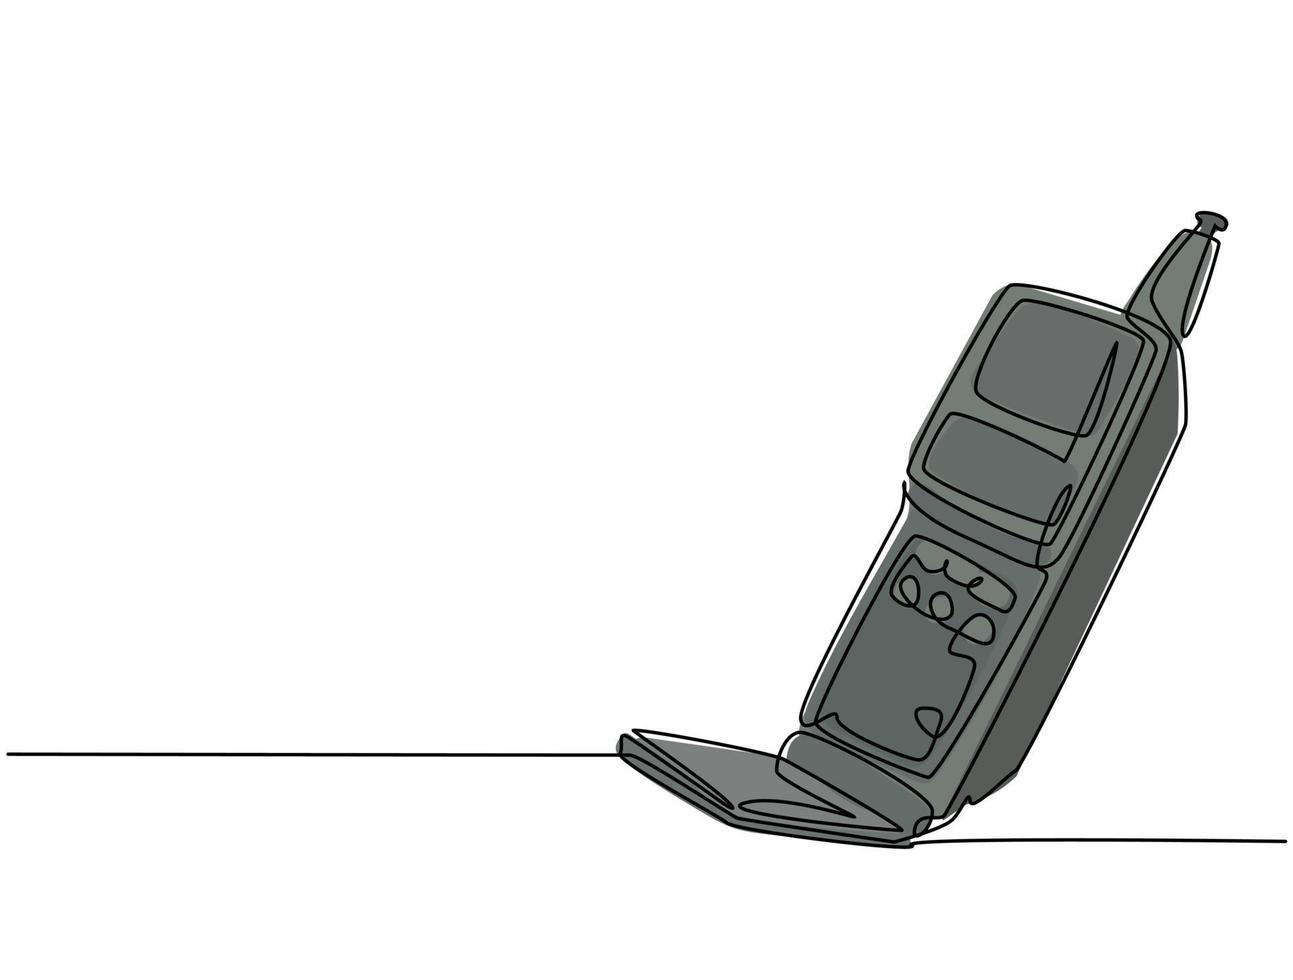 een enkele lijntekening van oude retro flip mobiele telefoon. vintage klassieke mobiele telefoon om te communiceren concept ononderbroken lijn grafisch tekenen ontwerp vectorillustratie vector